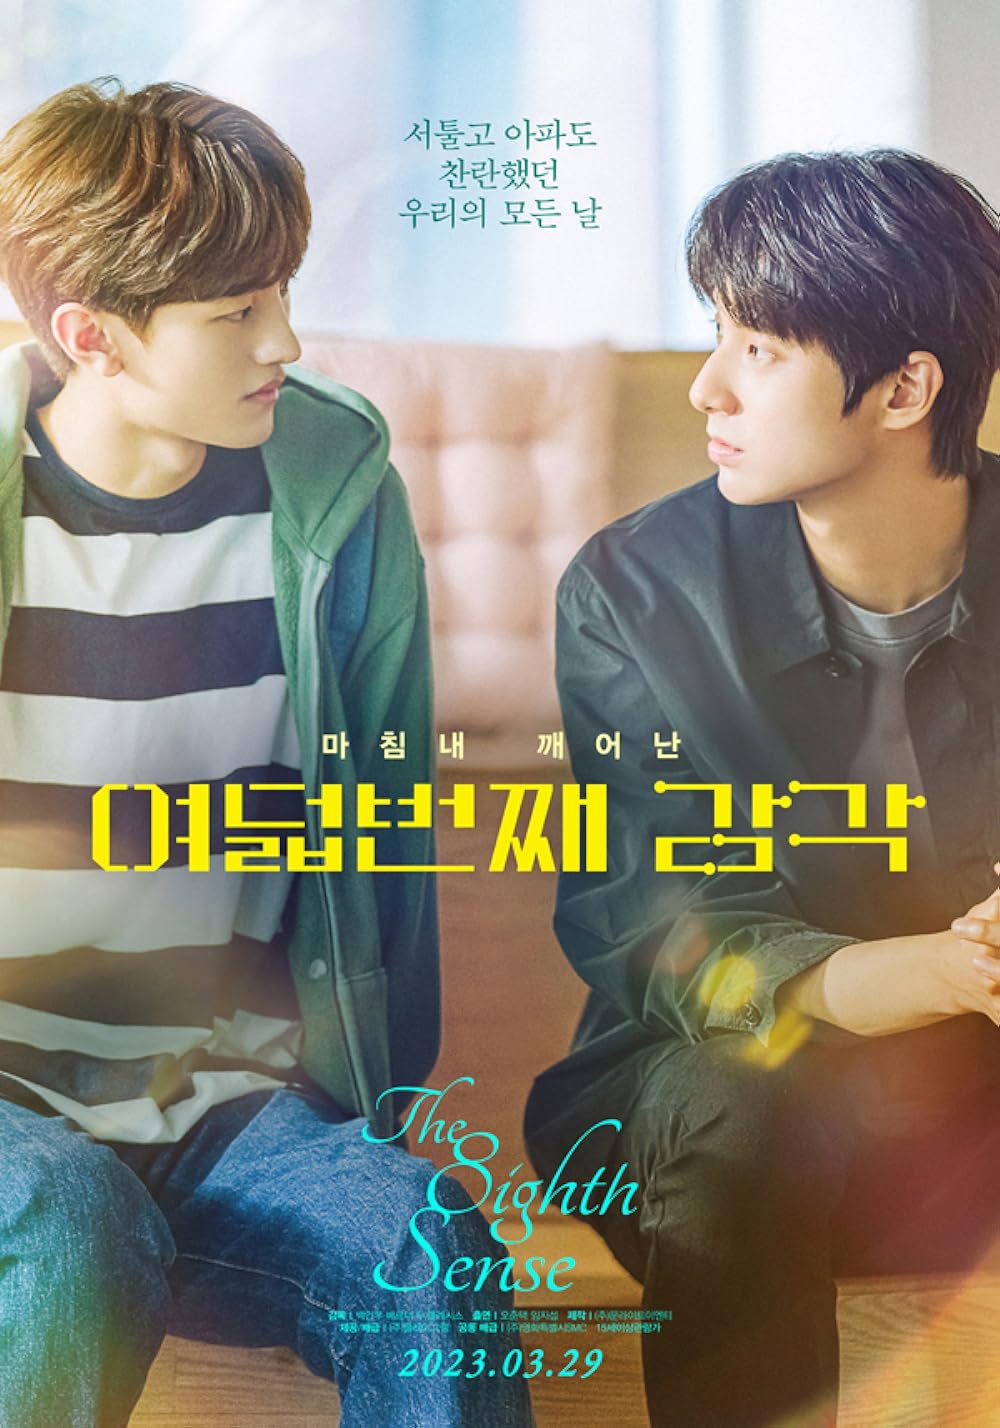 Phim đam mỹ Hàn Quốc: Giác quan thứ tám – The eighth sense (2023)